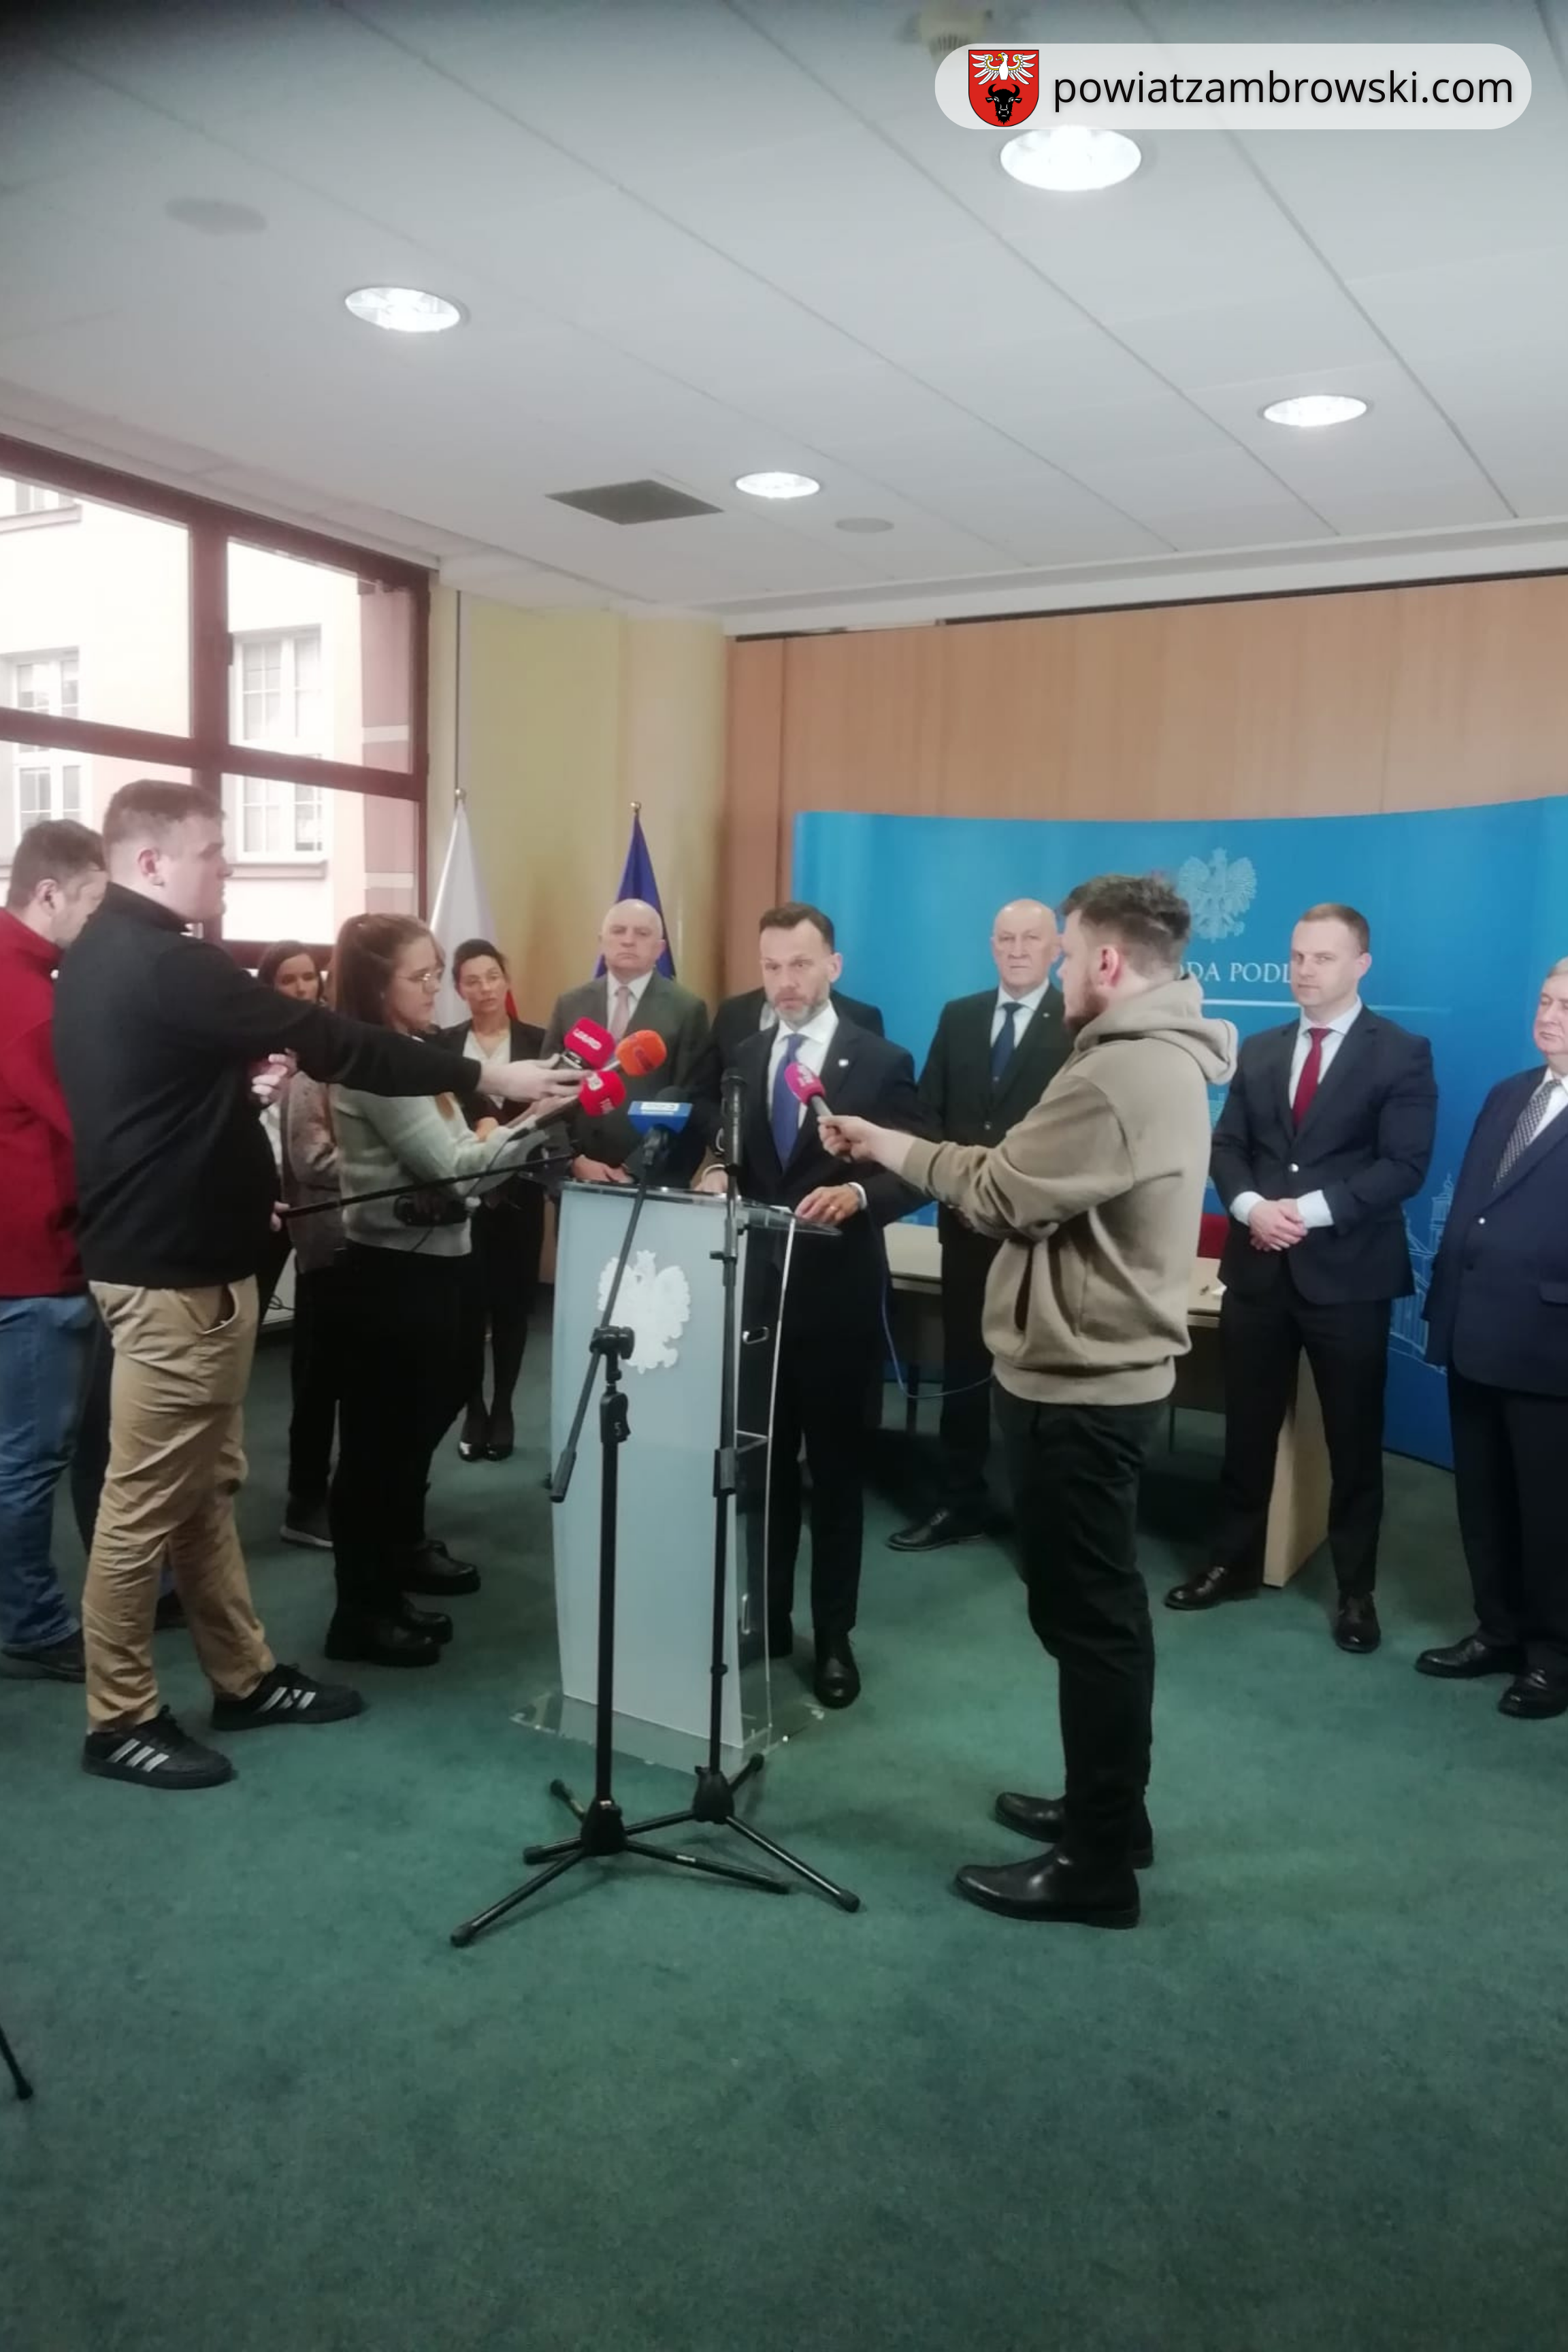 grupowe zdjęcie podczas konferencji prasowej w Podlaskim Urzędzie Wojewódzkim 